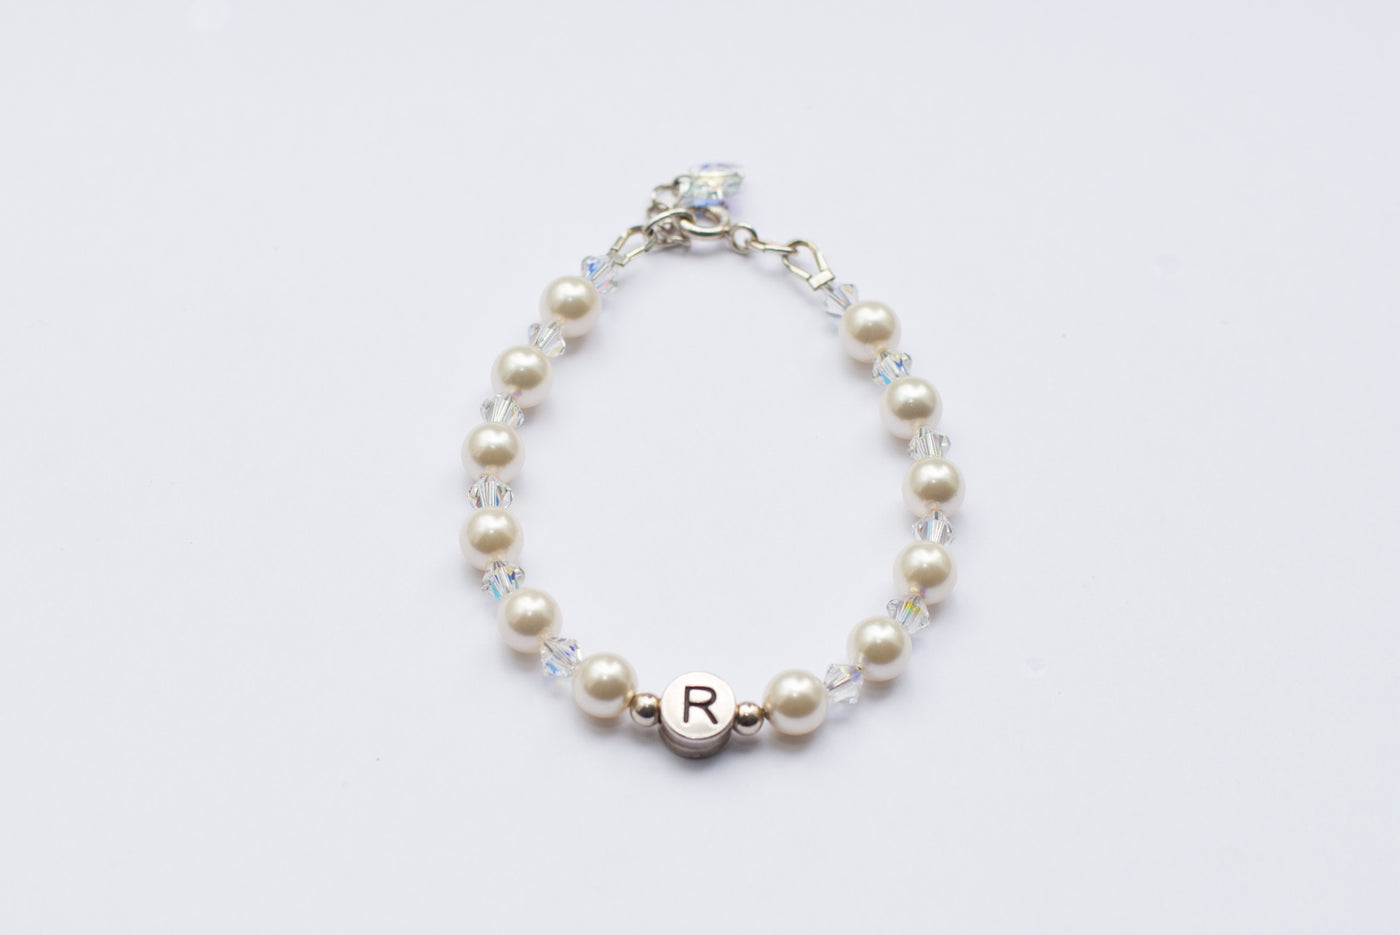 Personalised Name Bracelet - Ivory Swarovski Pearls & Crystals